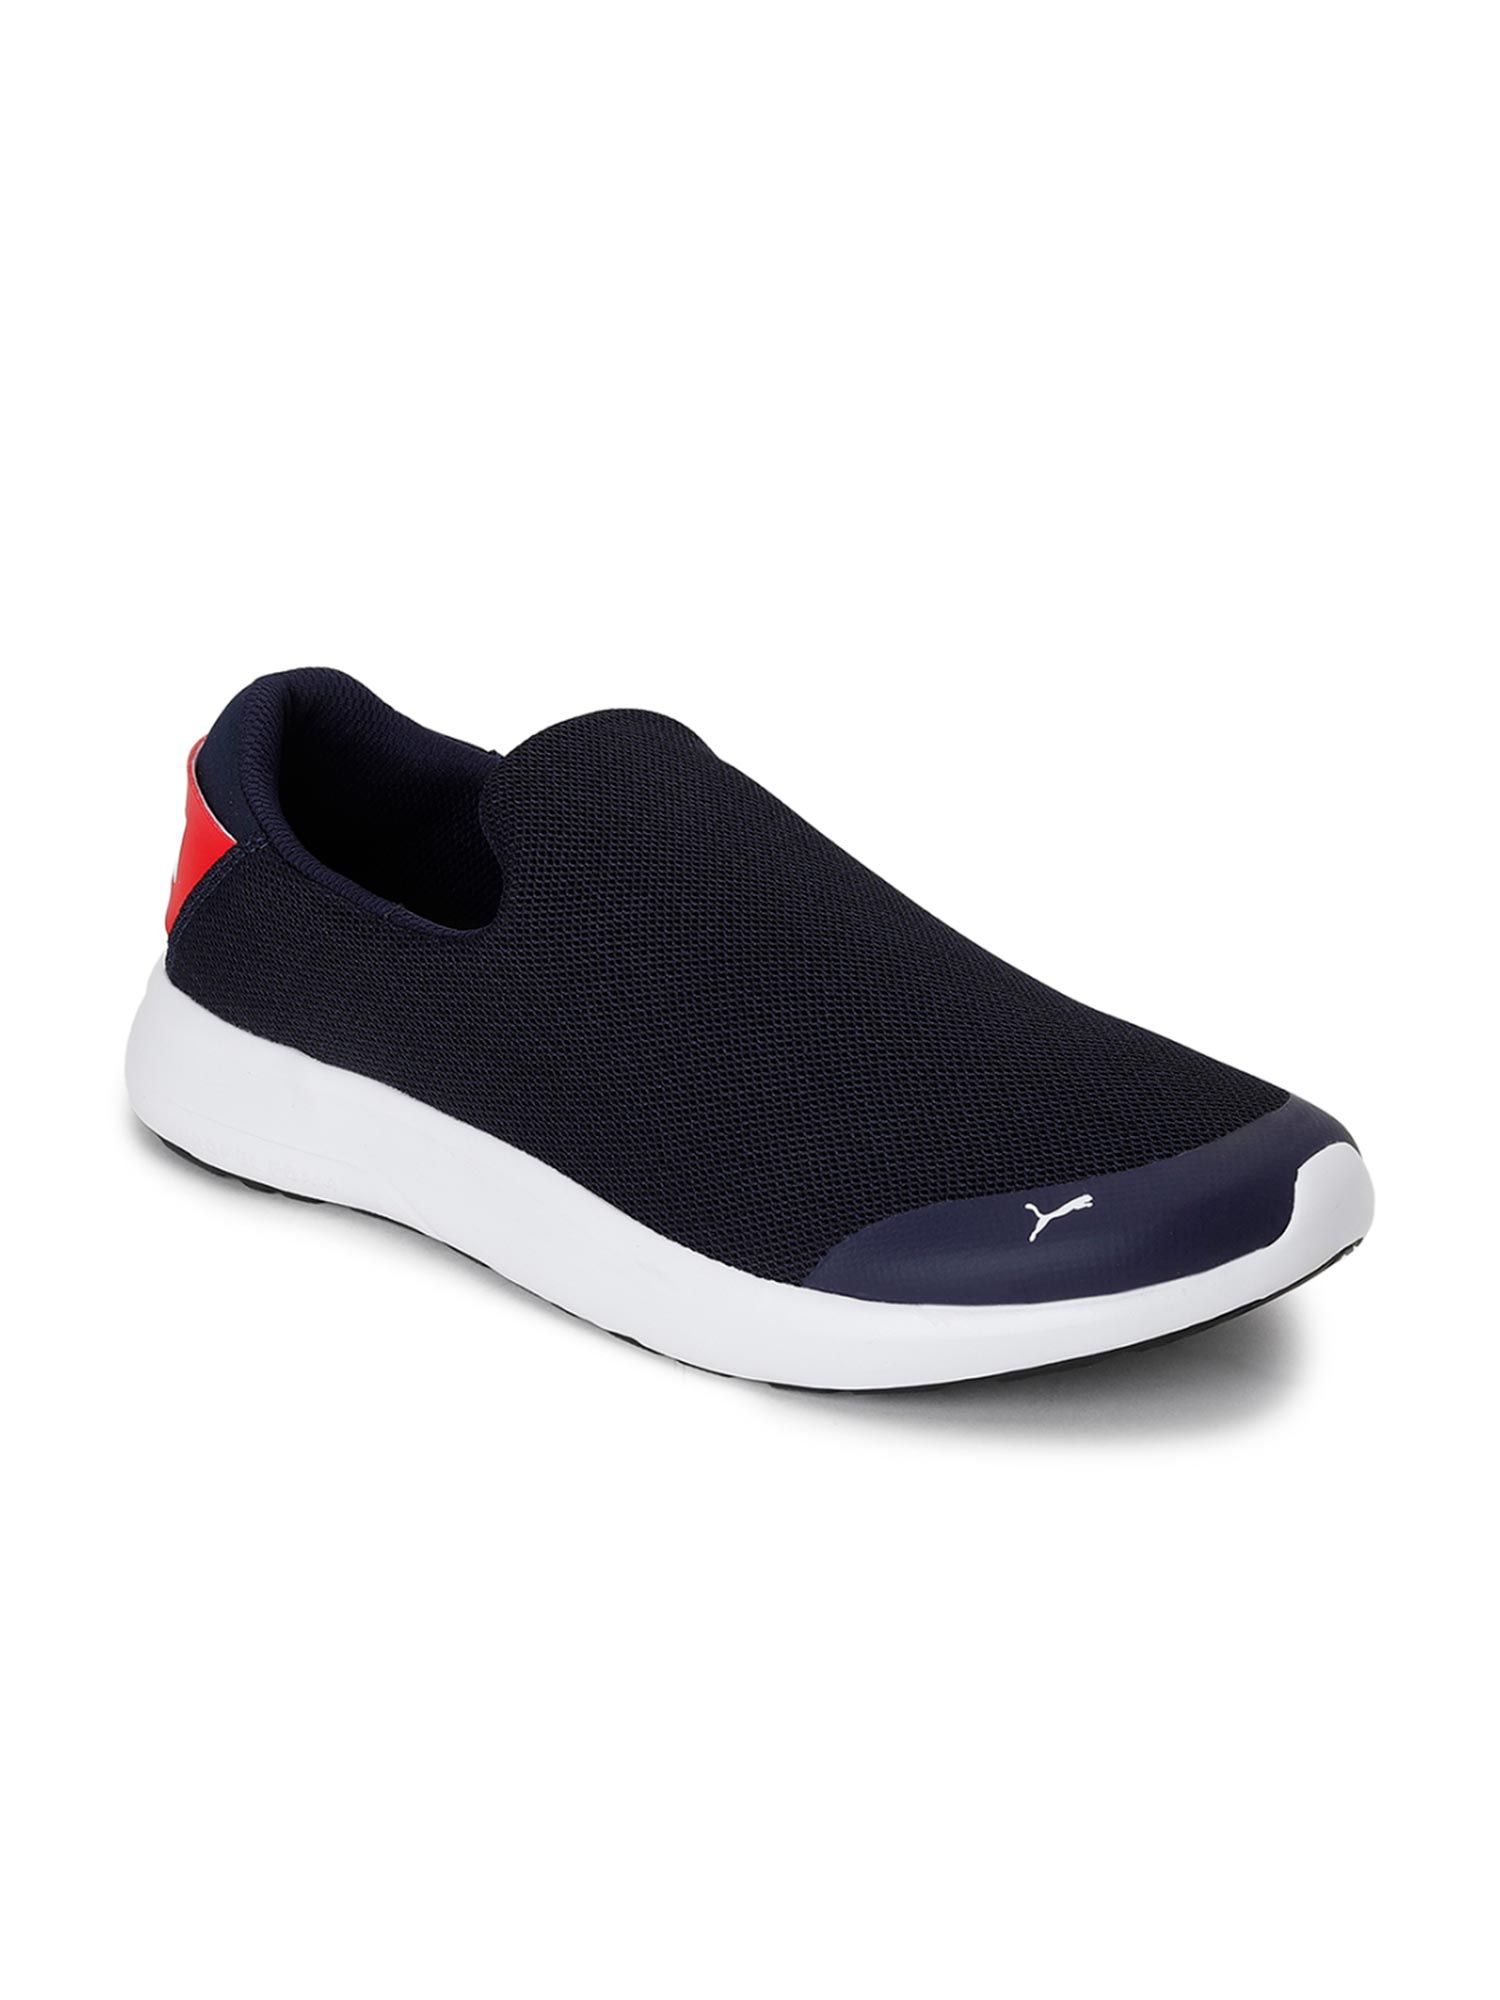 Puma Comfort Slipon Men Blue Sneakers (UK 9)